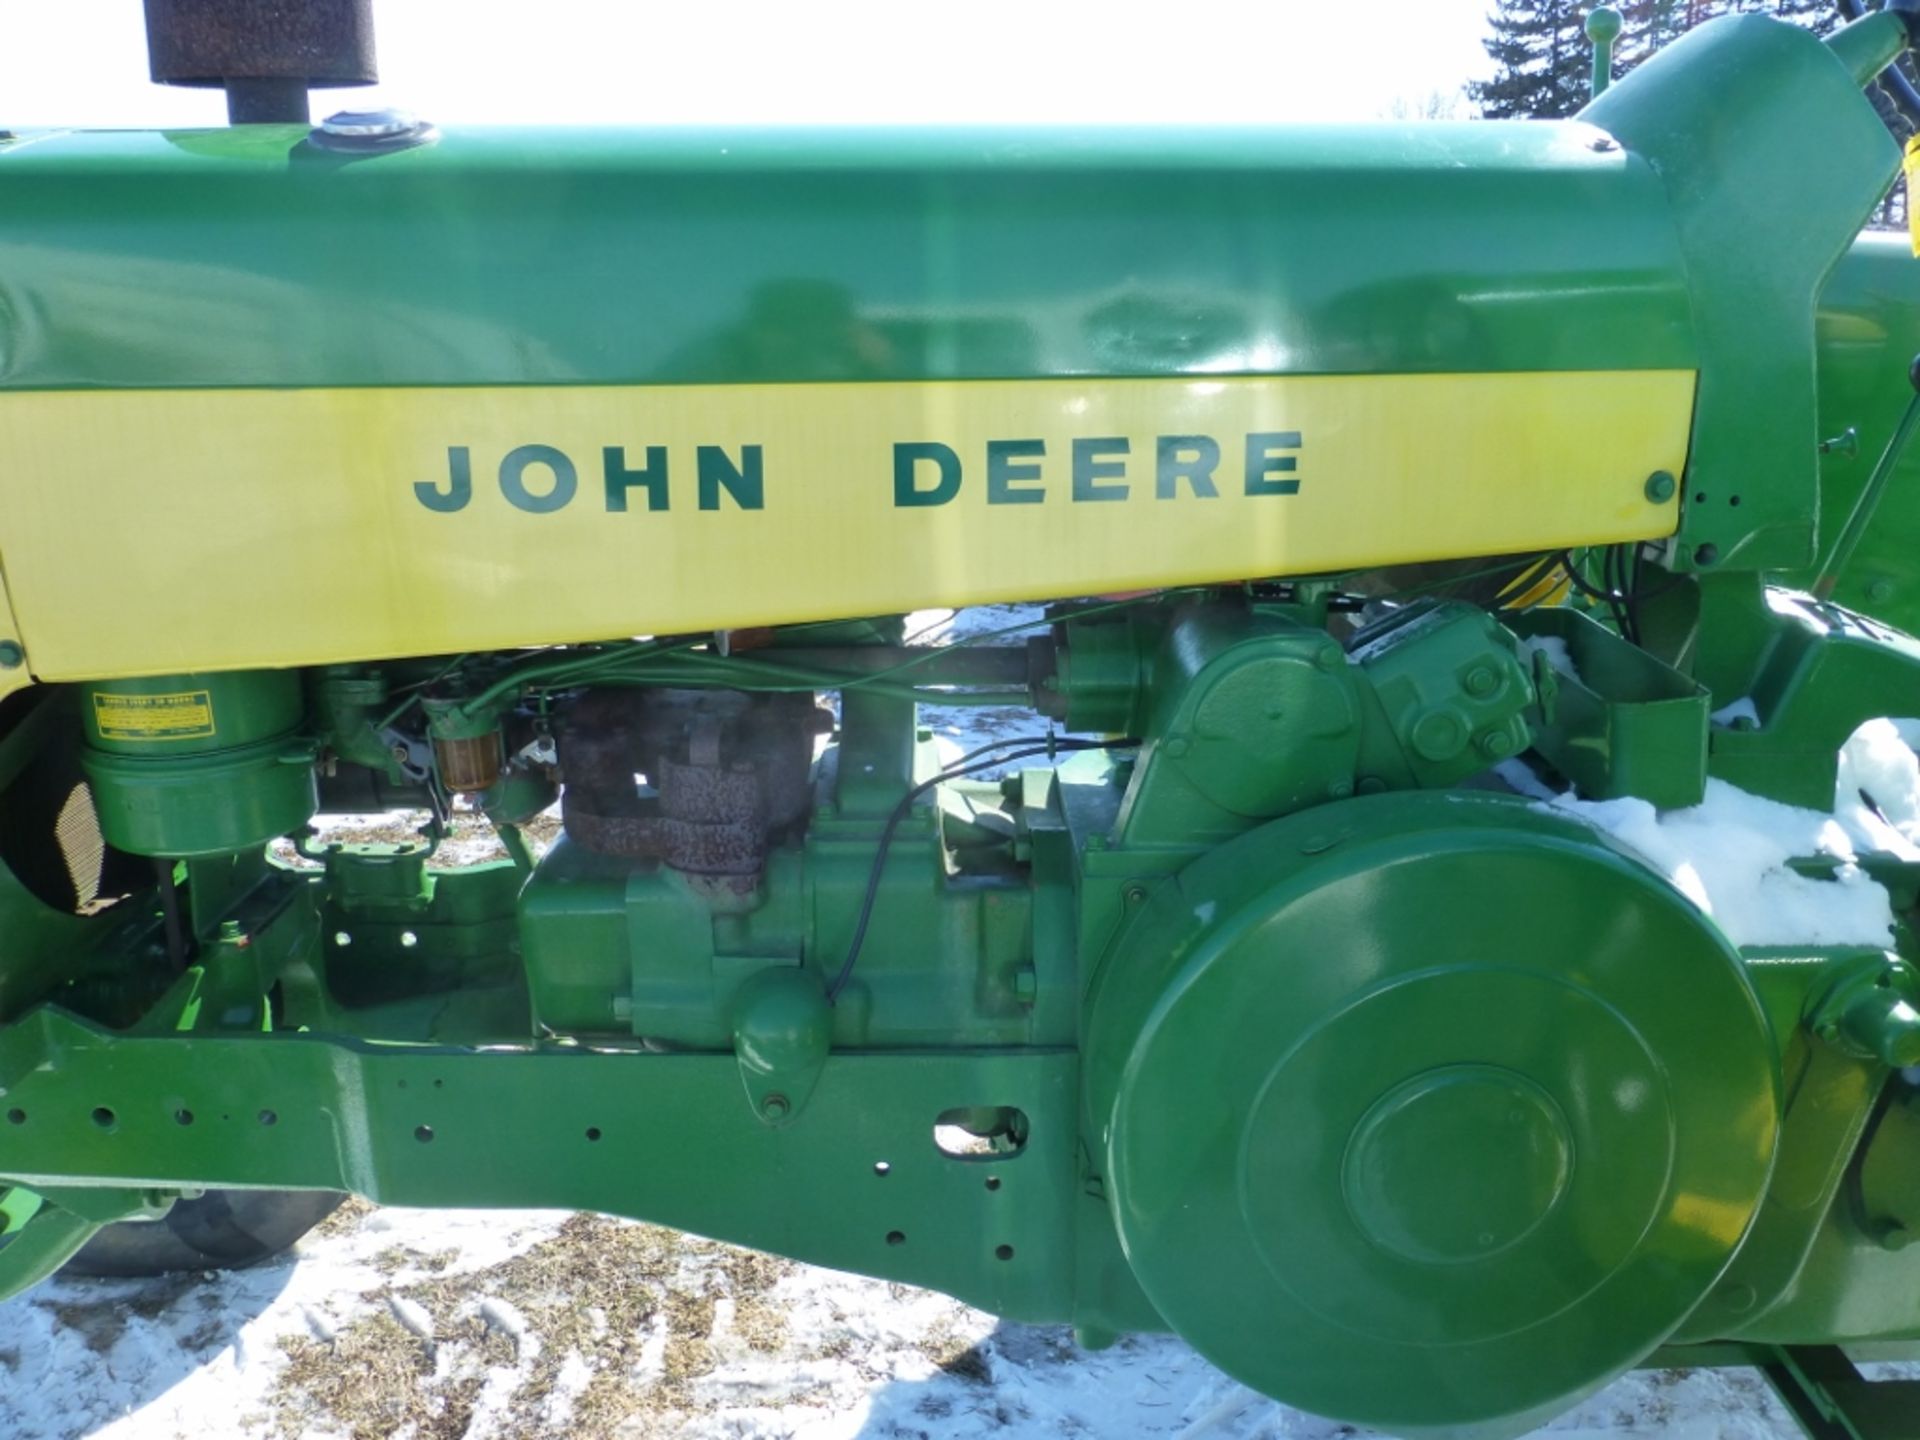 John Deere 730 tractor - Image 6 of 9